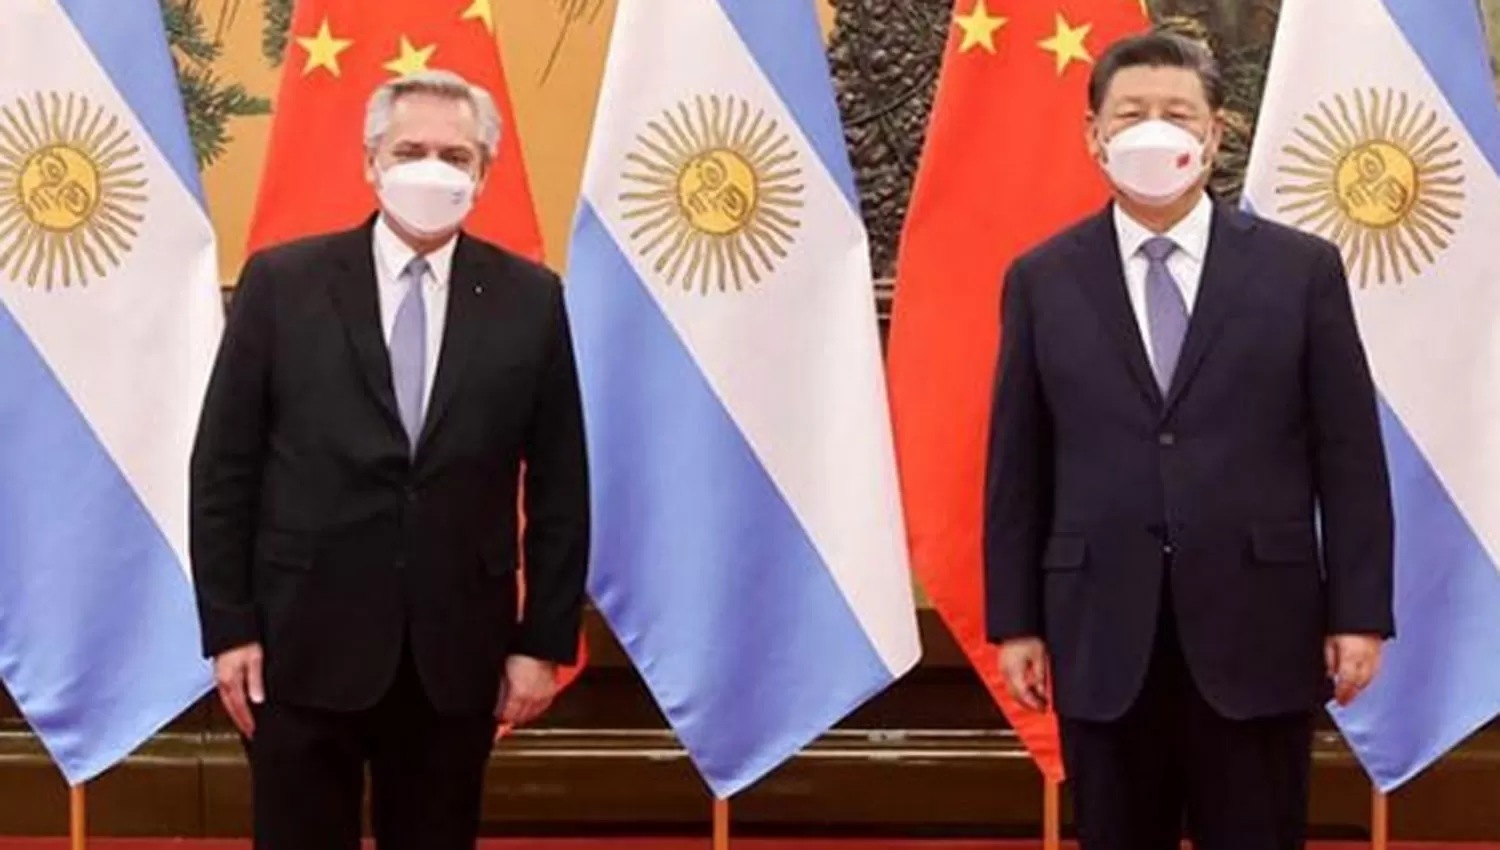 EN BEIJING. Alberto Fernández junto a Xi Jinping, en el encuentro que mantuvieron hoy en China.